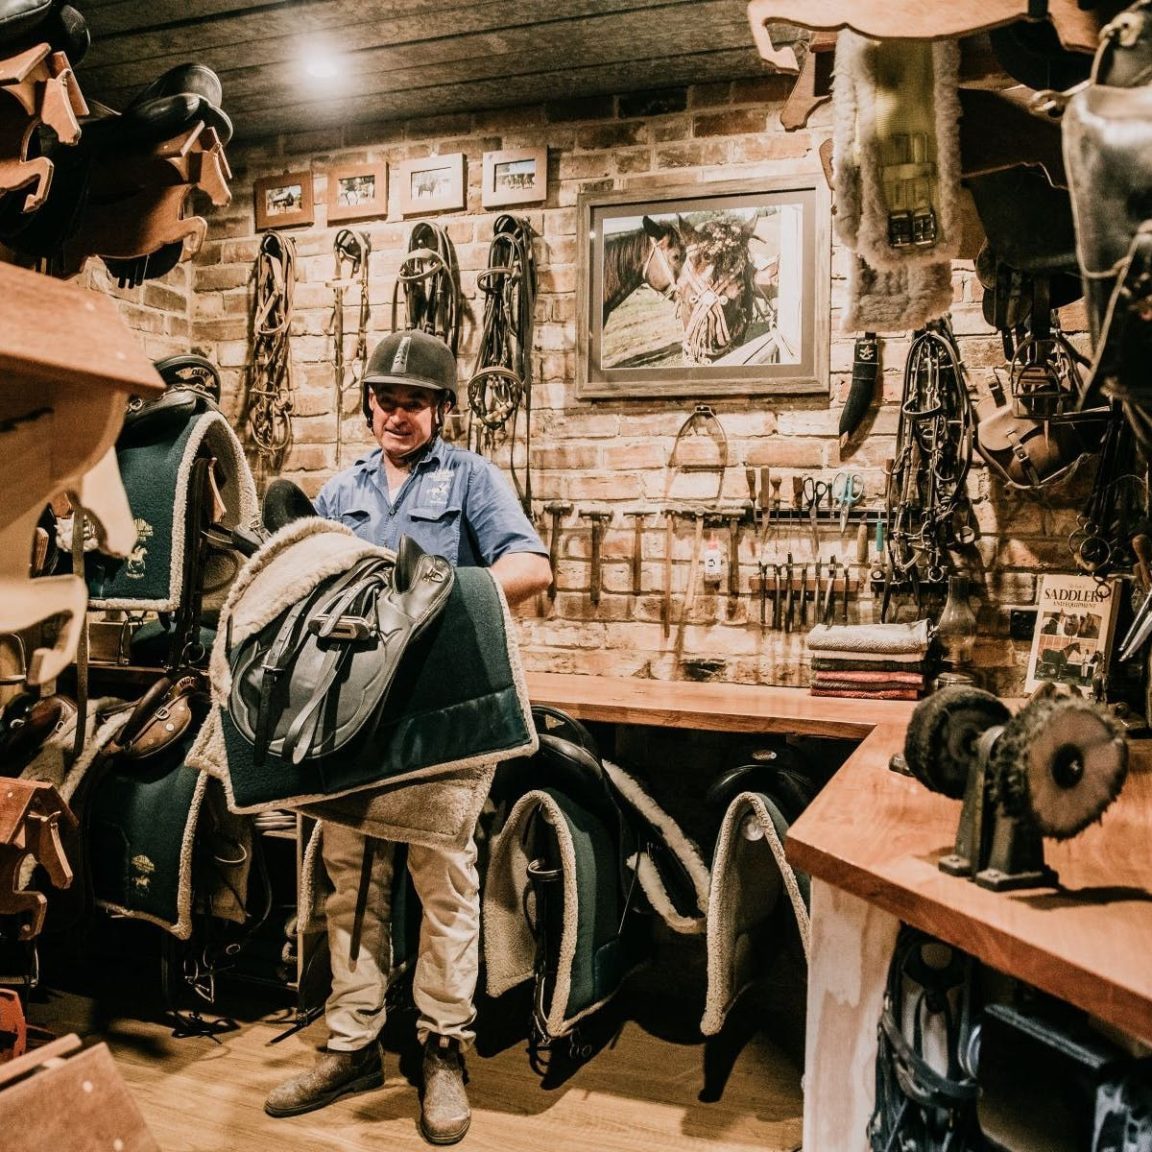 Image of man holding saddle